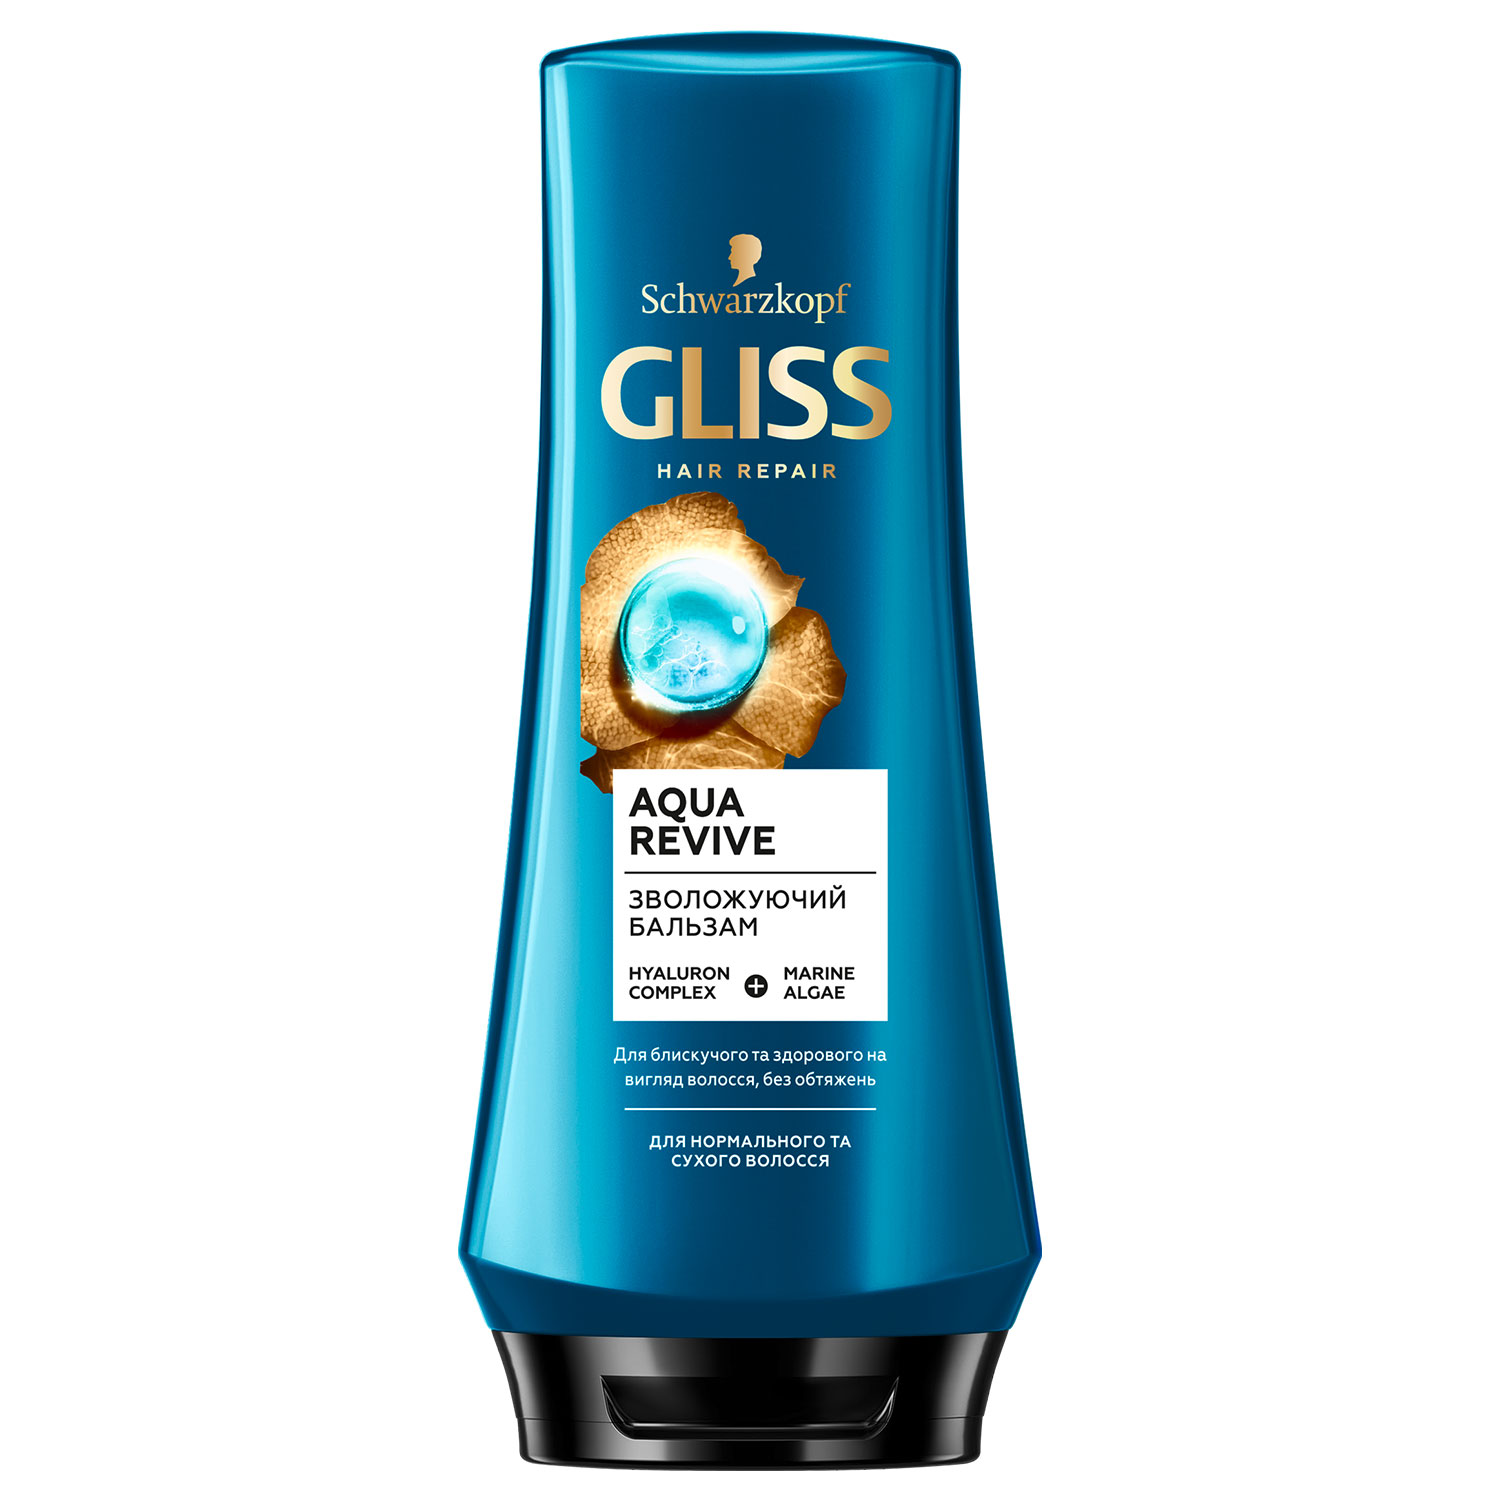 Бальзам GLISS Aqua revive для увлажнения сухих и нормальных волос 200 мл